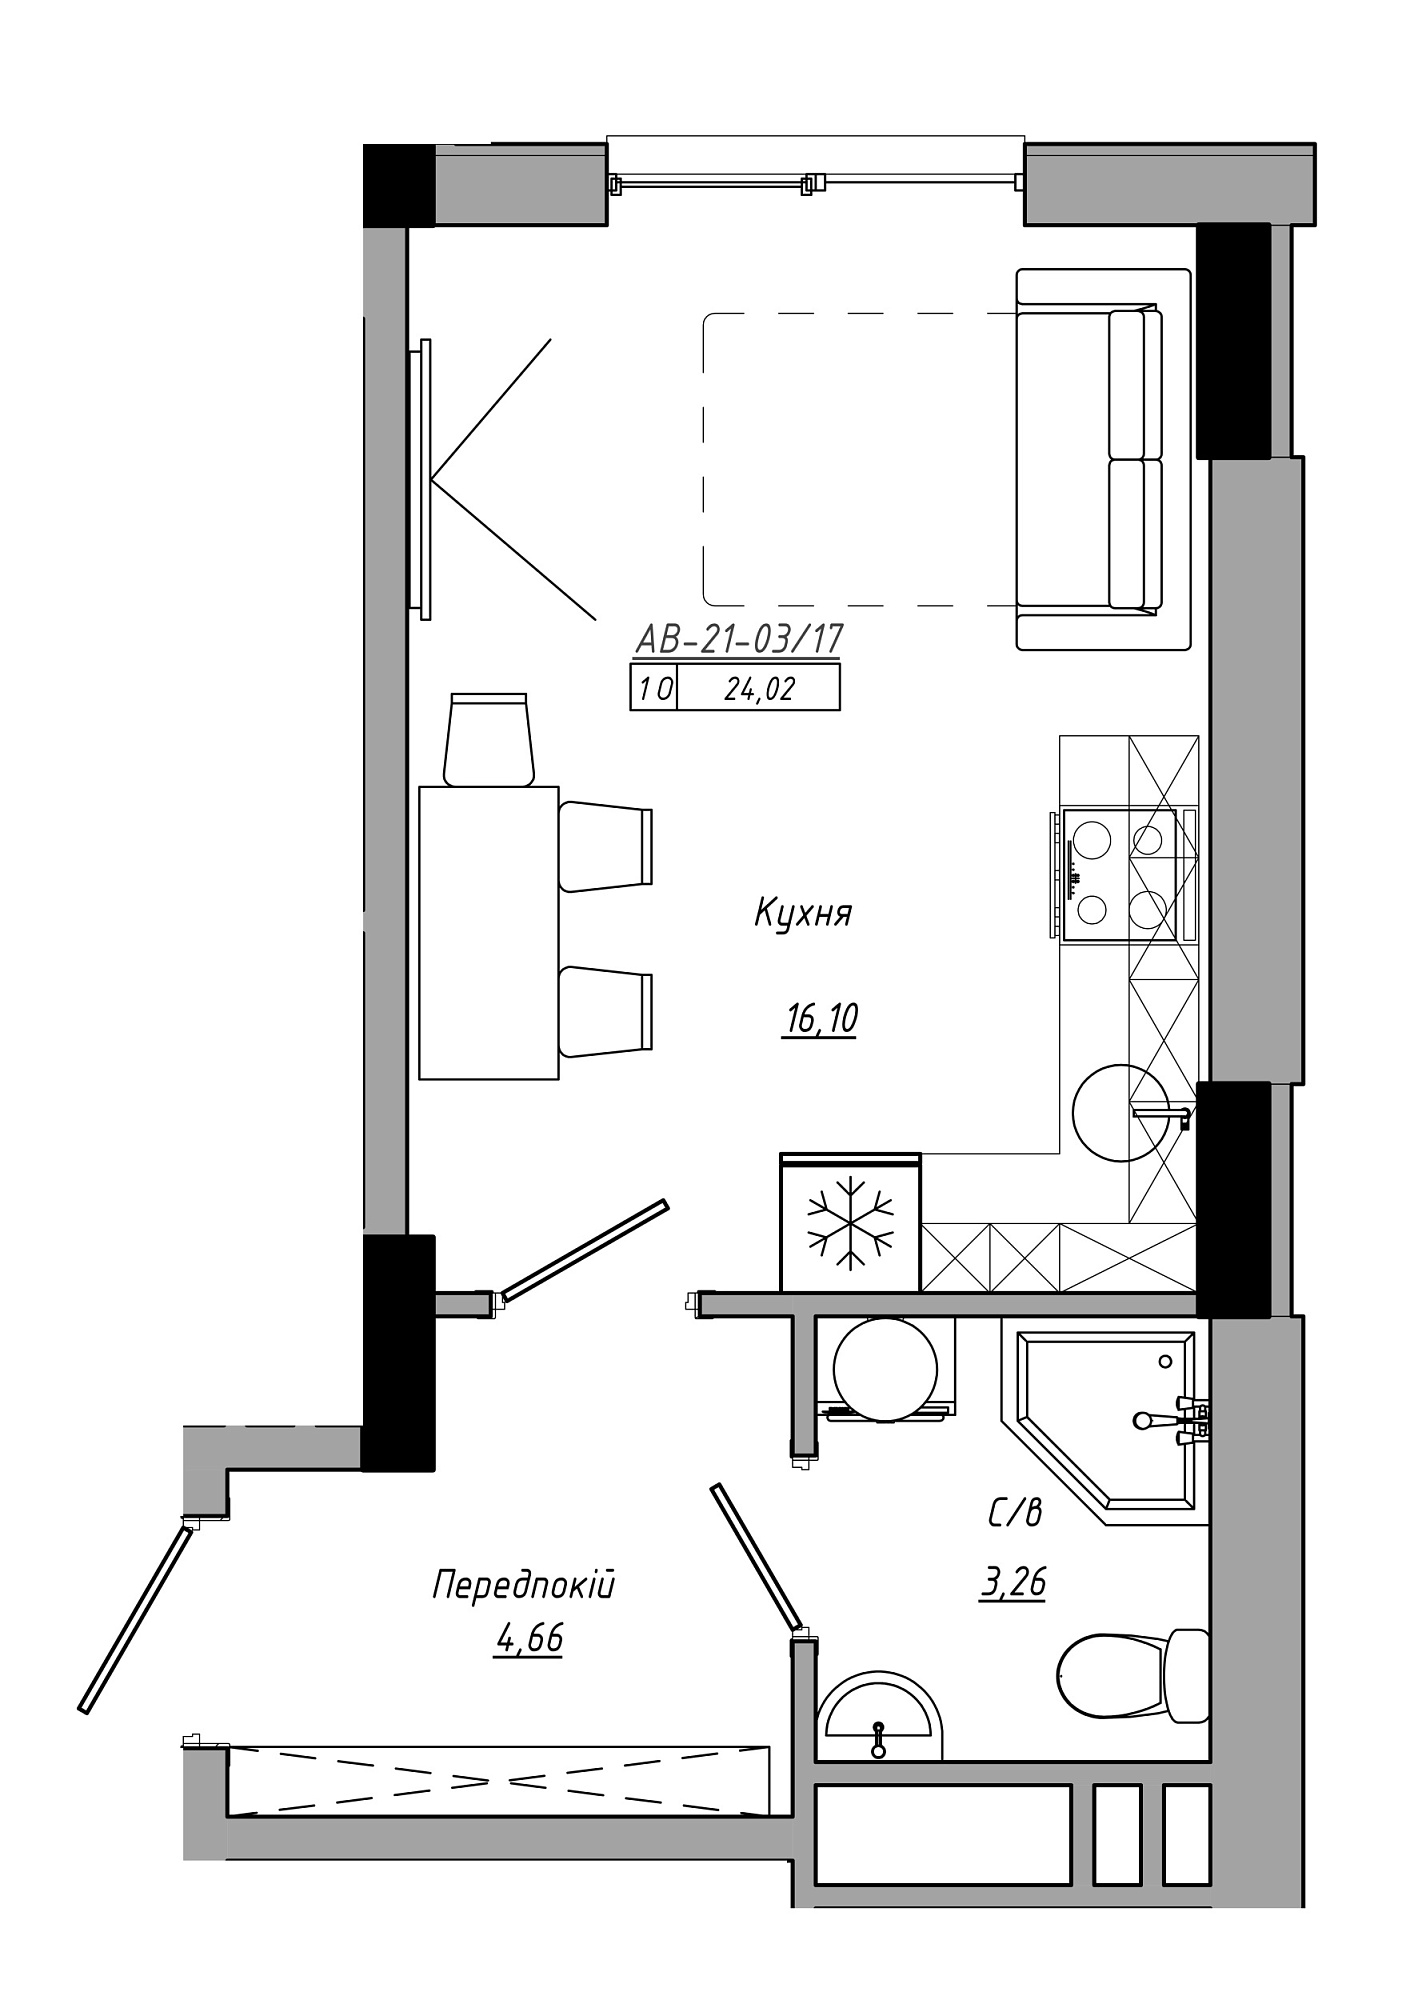 Планування Smart-квартира площею 24.02м2, AB-21-03/00017.